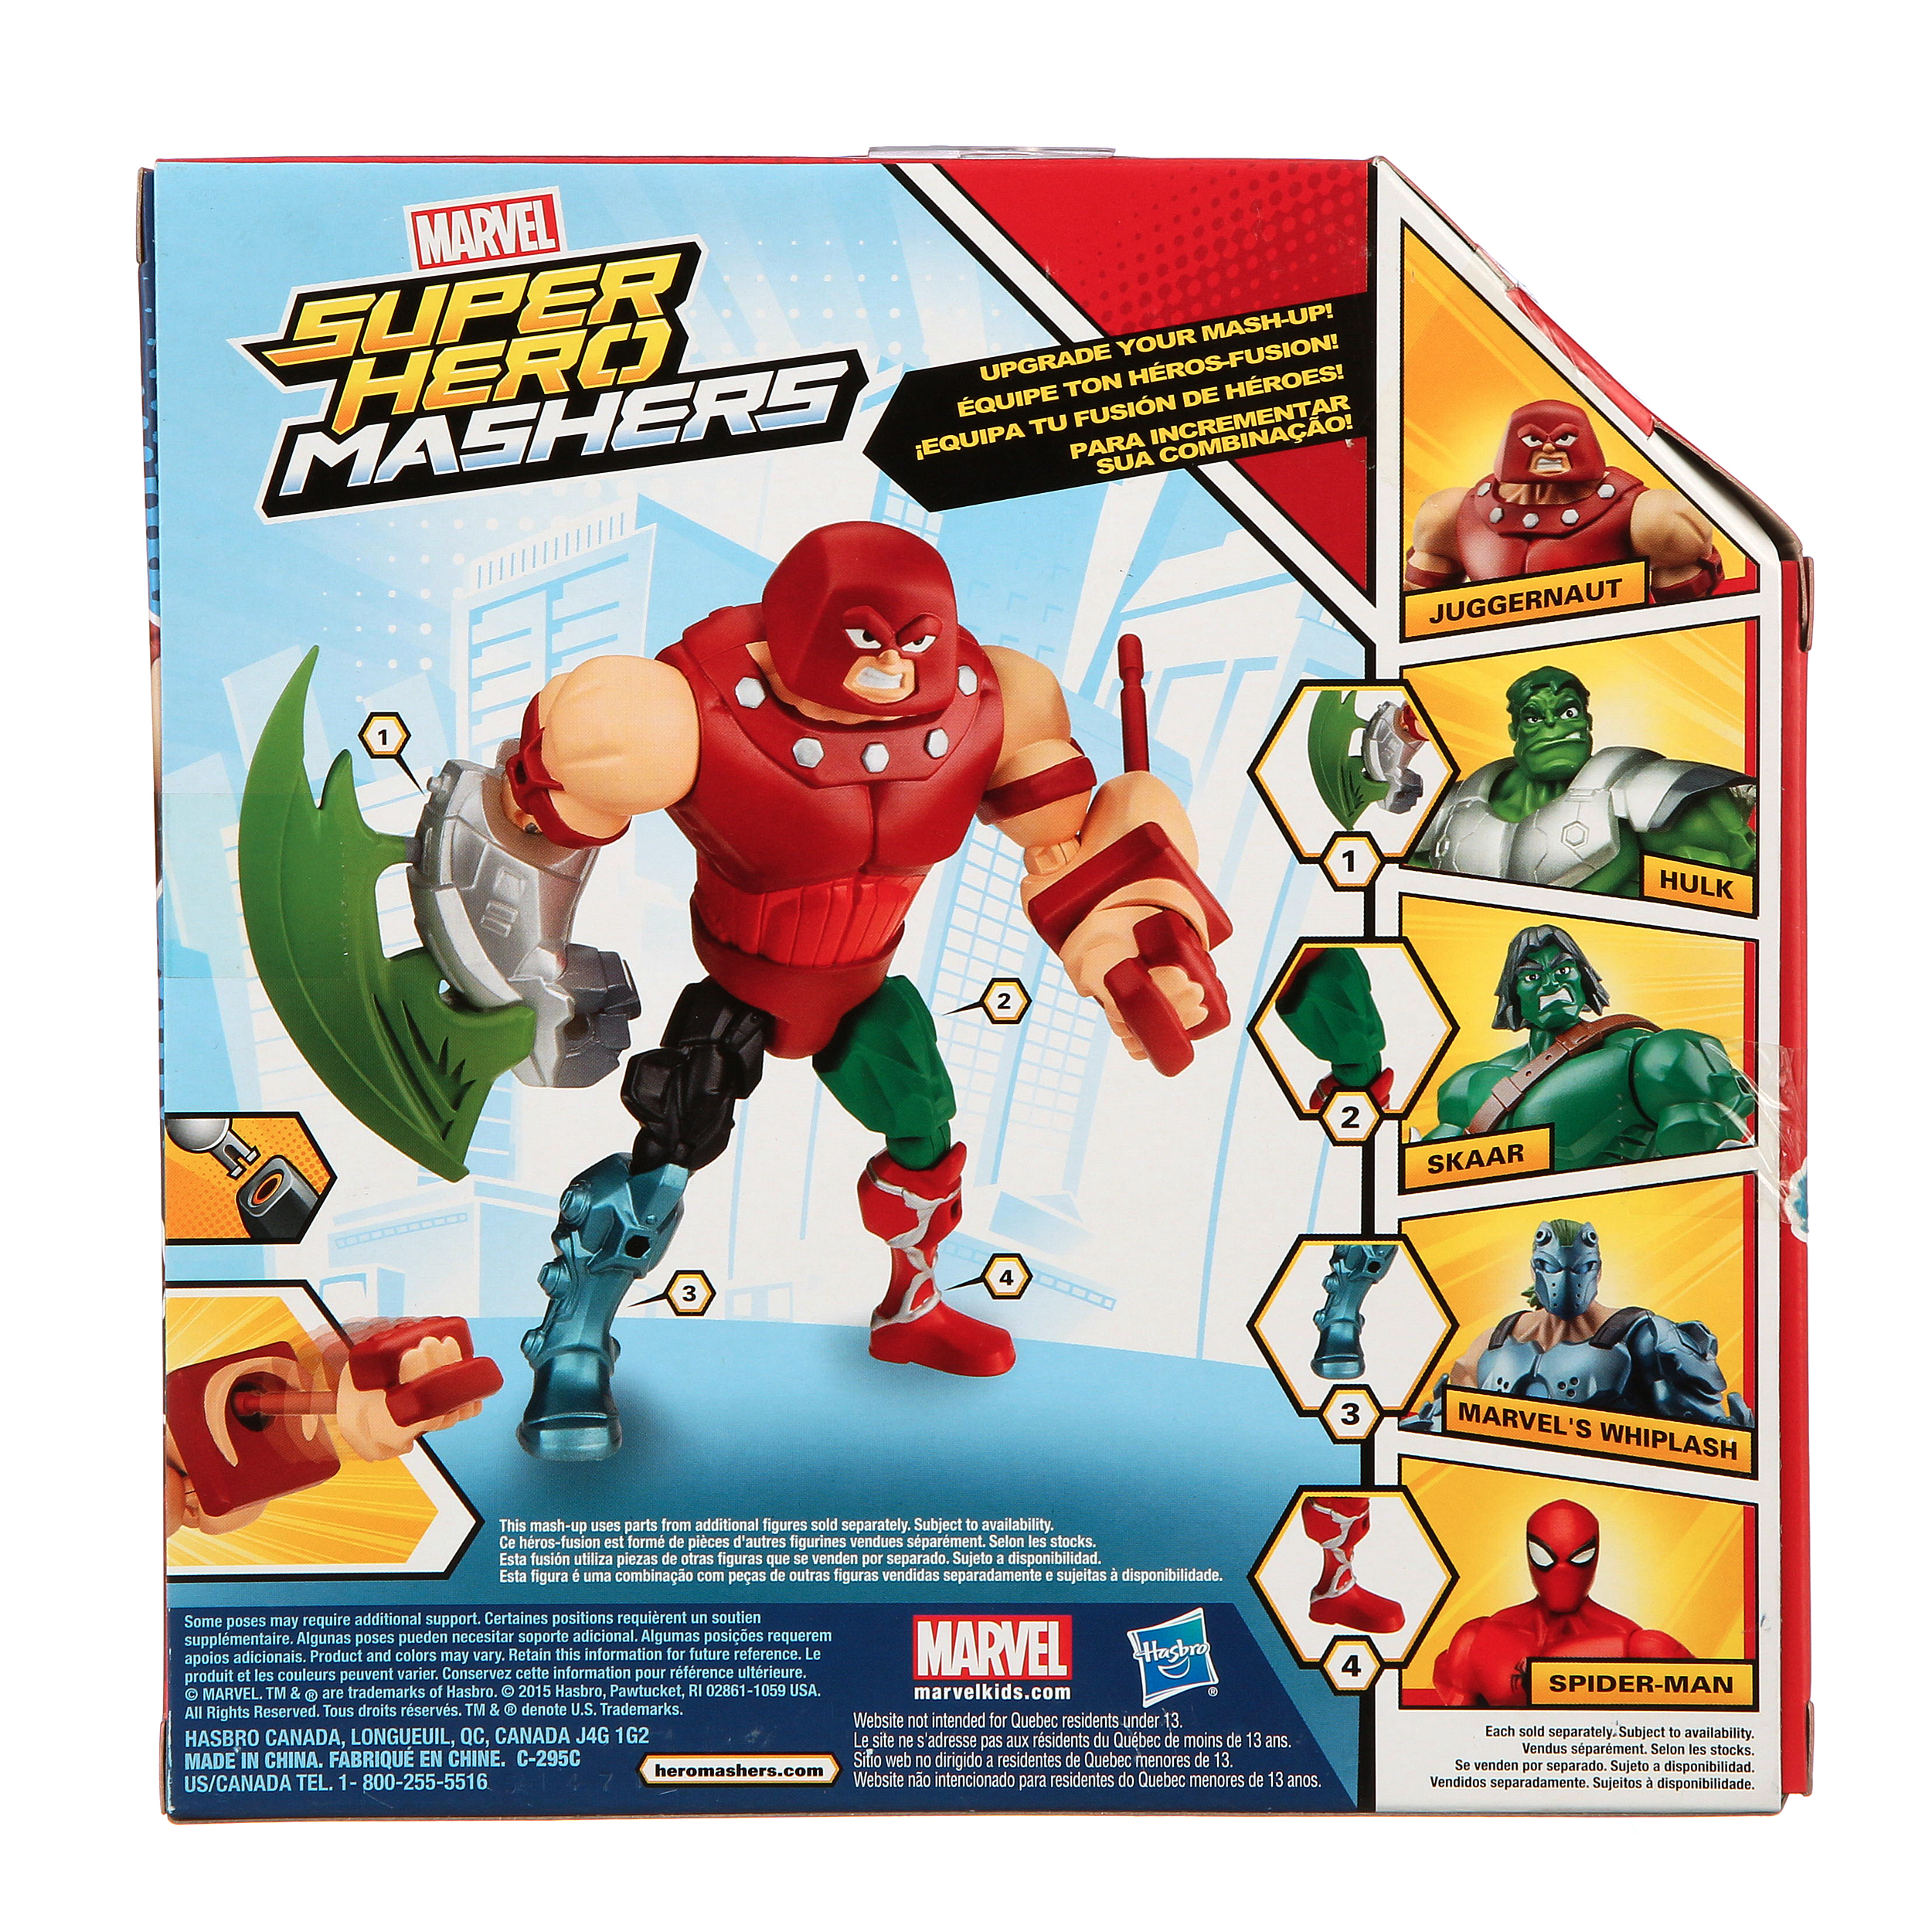 Marvel Super Hero Mashers Battle Upgrade Juggernaut Action Figure - image 3 of 5